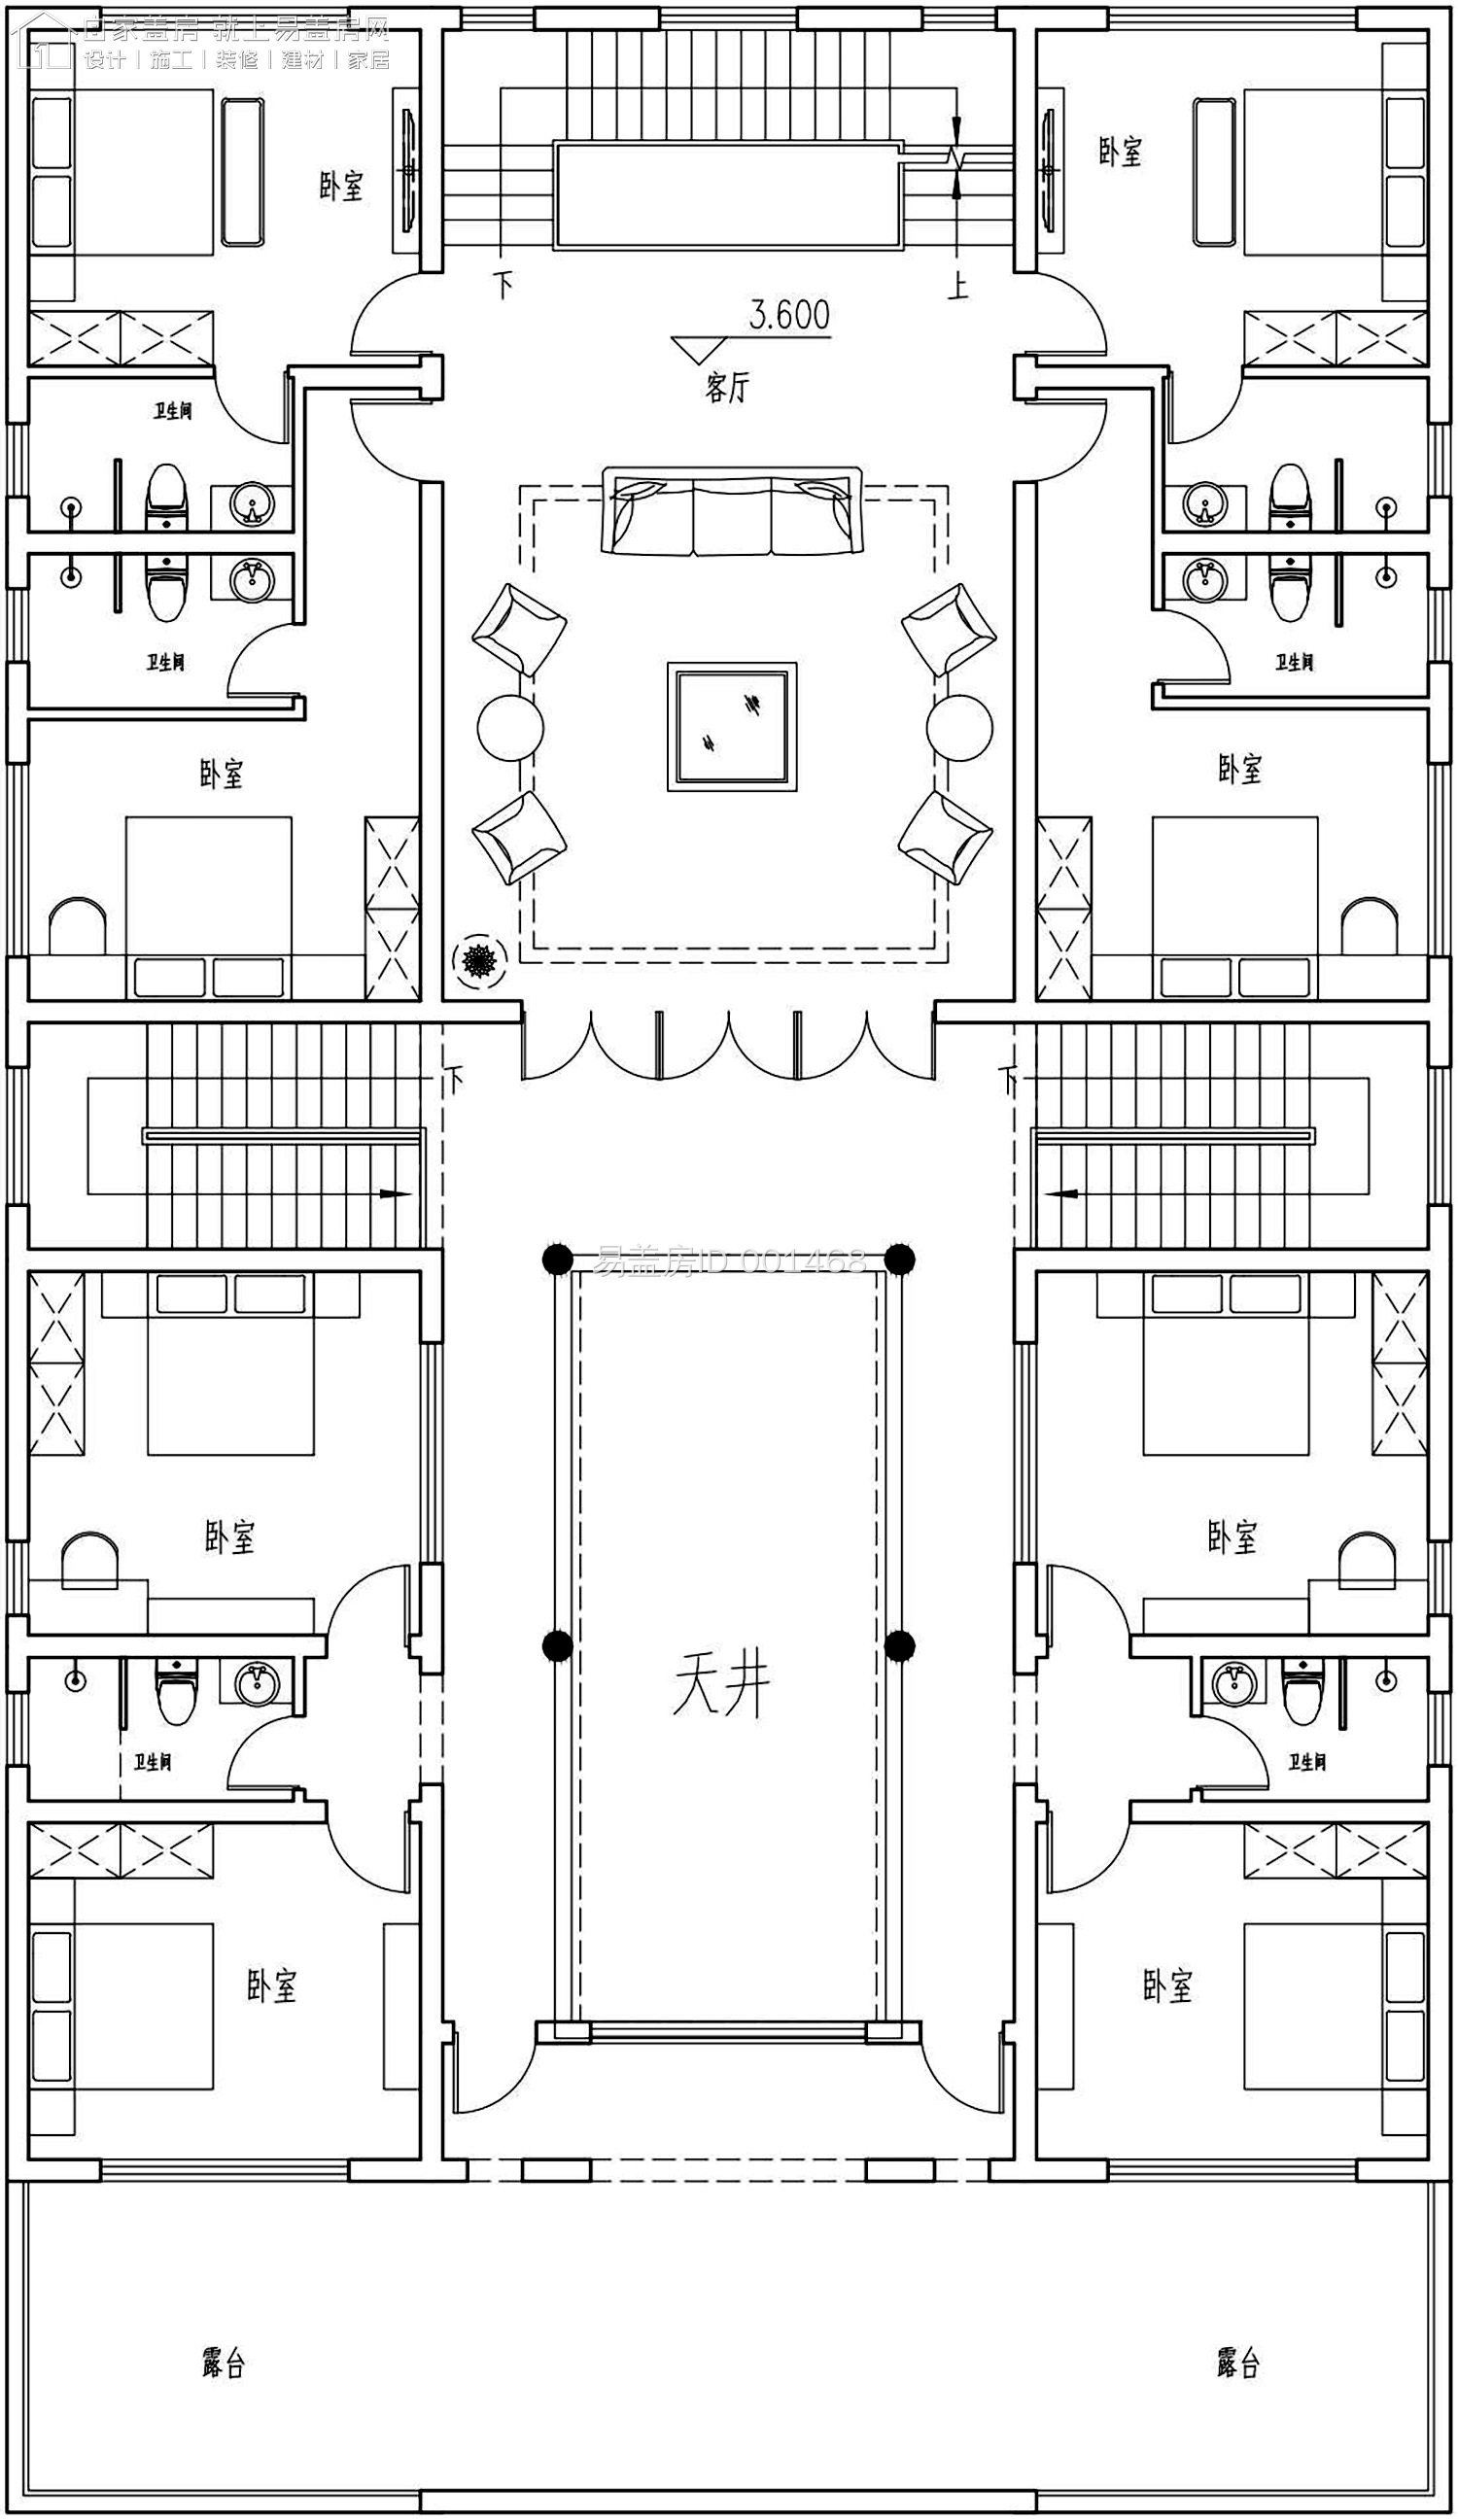 2浙江庆元平面图2.29-Model_00.jpg